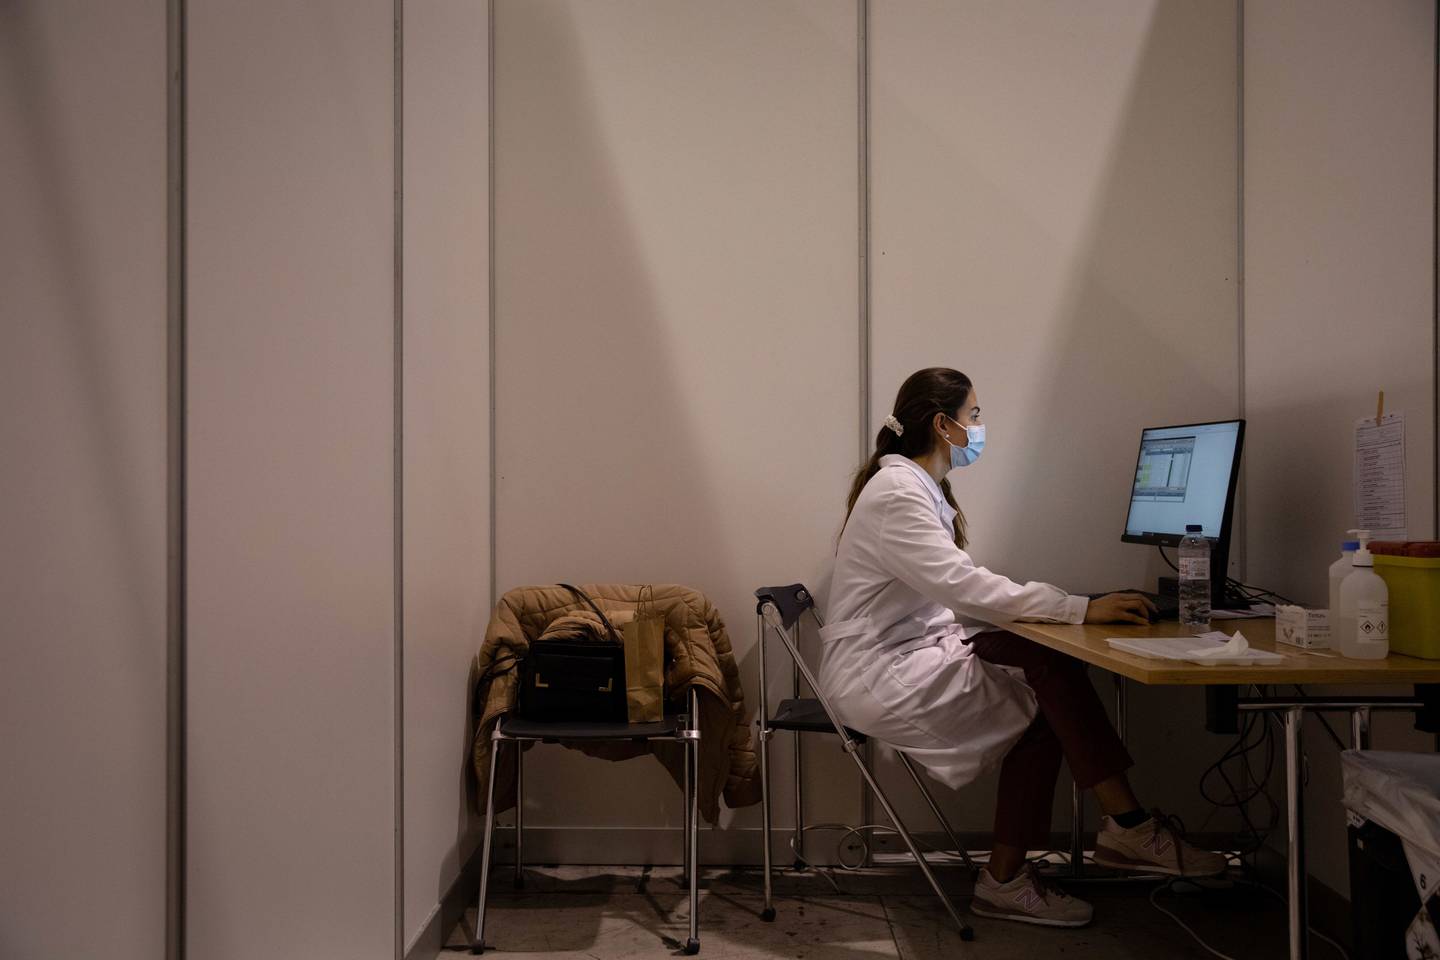 Una trabajadora sanitaria trabaja en un ordenador mientras espera a su próximo paciente en el mayor centro de vacunación masiva de Portugal en el Parque das Nacoes, Lisboa, Portugal, el domingo 19 de diciembre de 2021. Fotógrafo: Goncalo Fonseca/Bloomberg